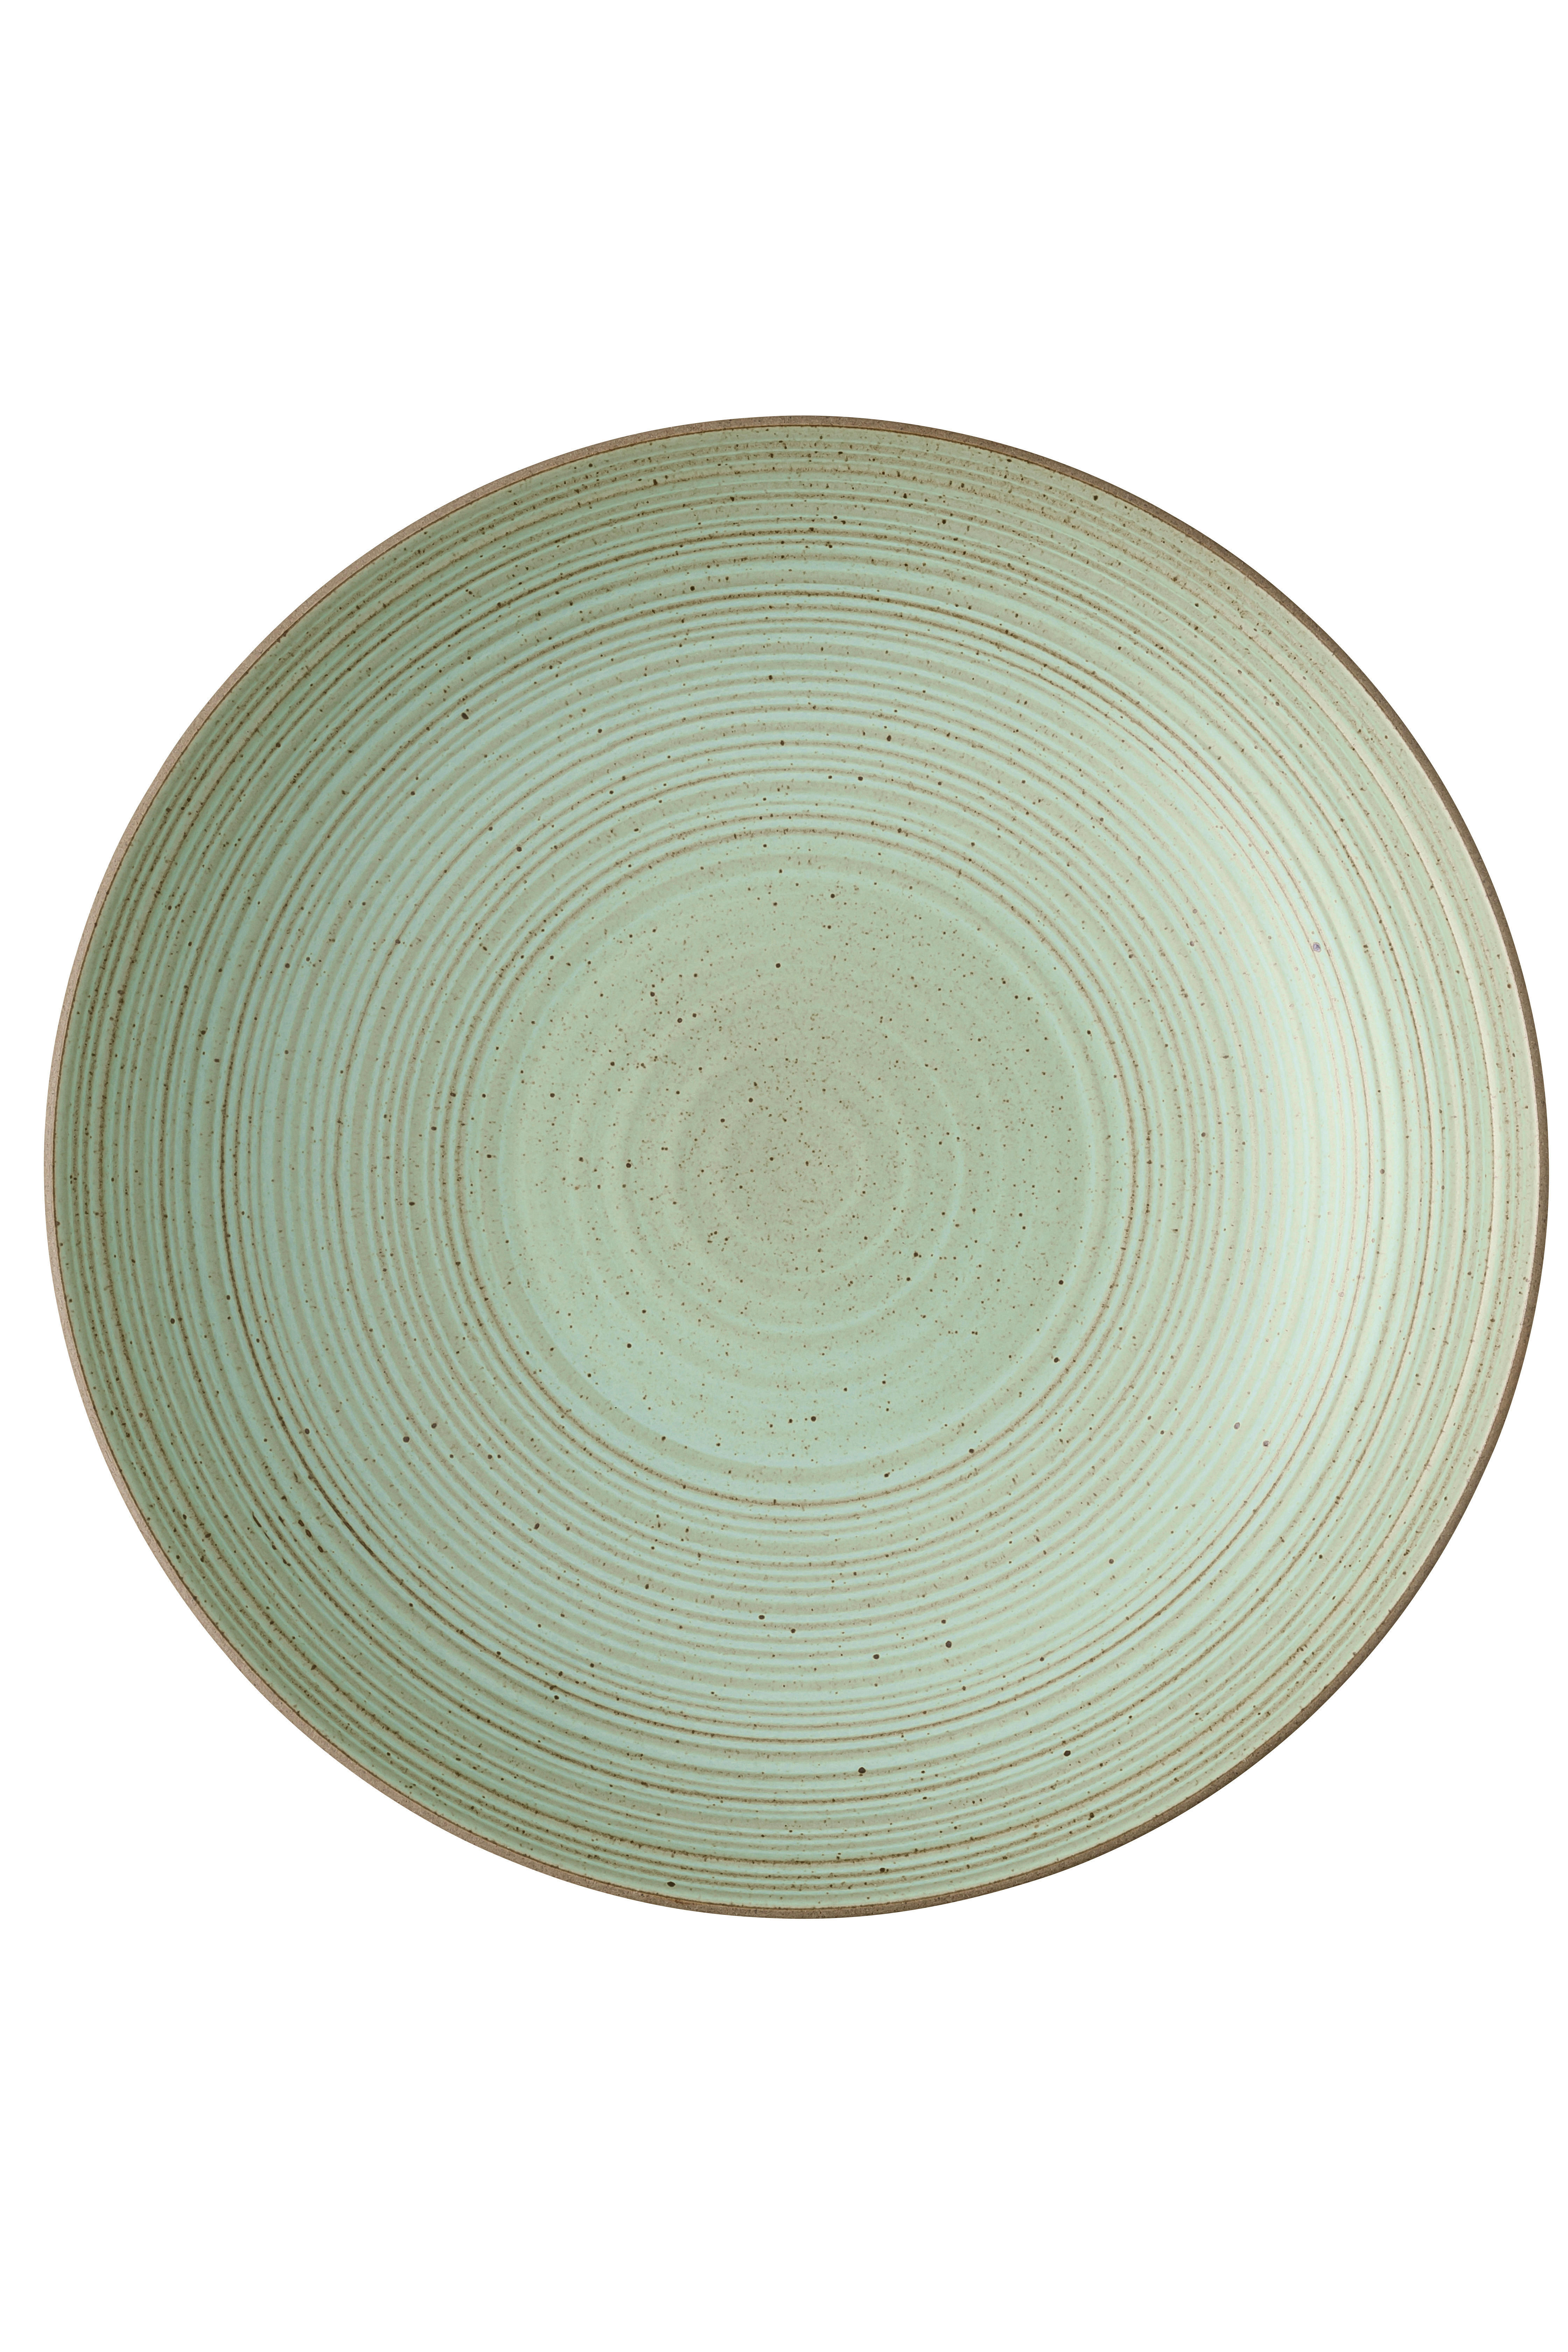 DUBOKI TANJIR  28 cm        - zelena, Osnovno, keramika (28cm) - Rosenthal